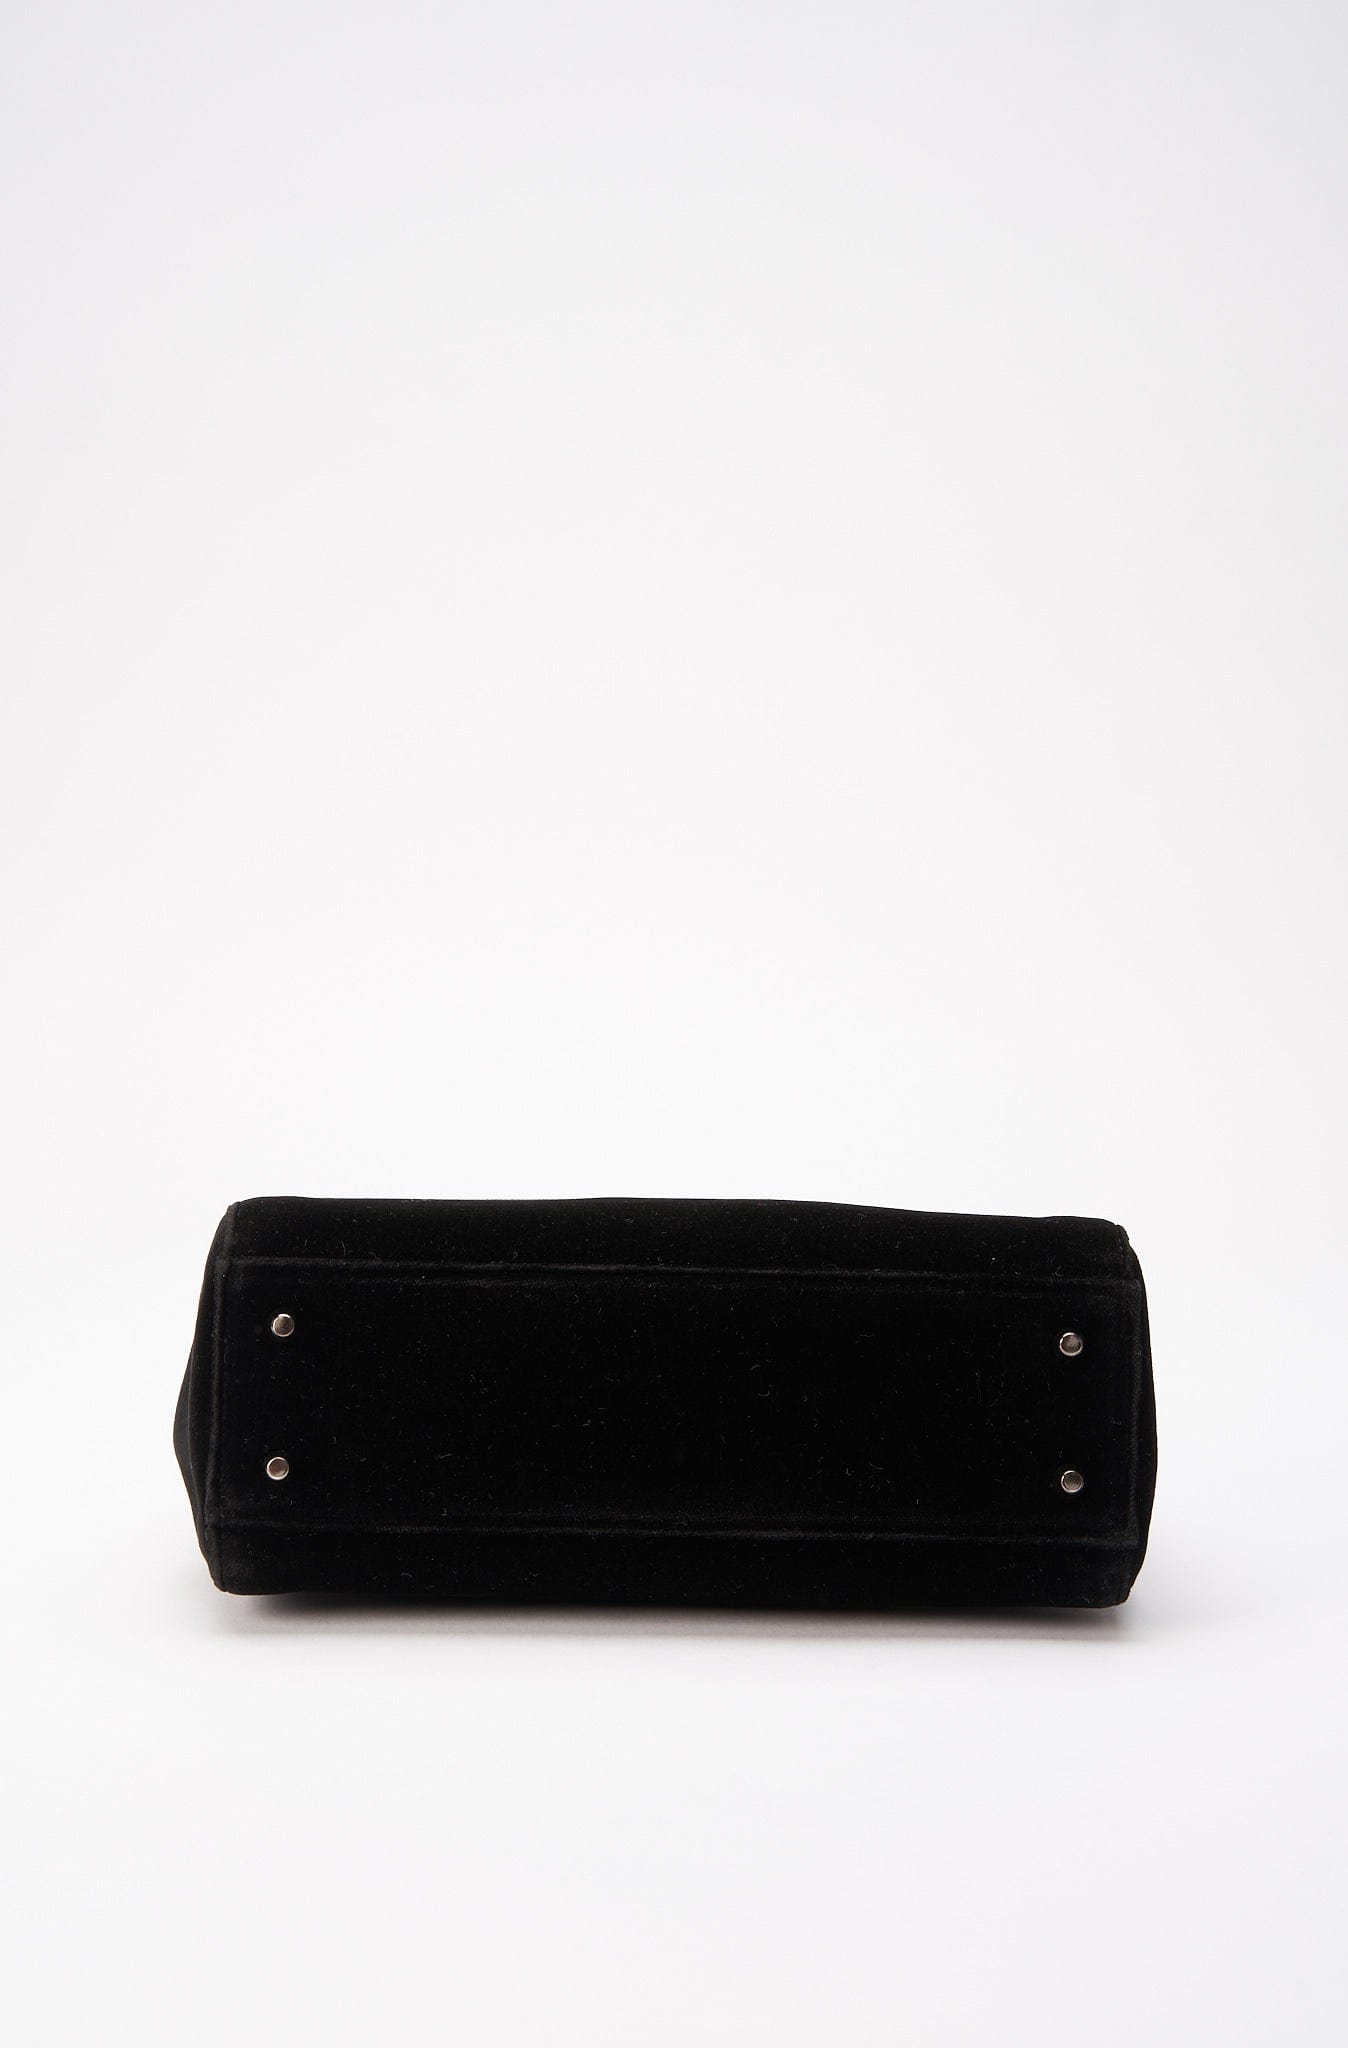 Prada Black Velvet Shoulder Bag with Leather Handles